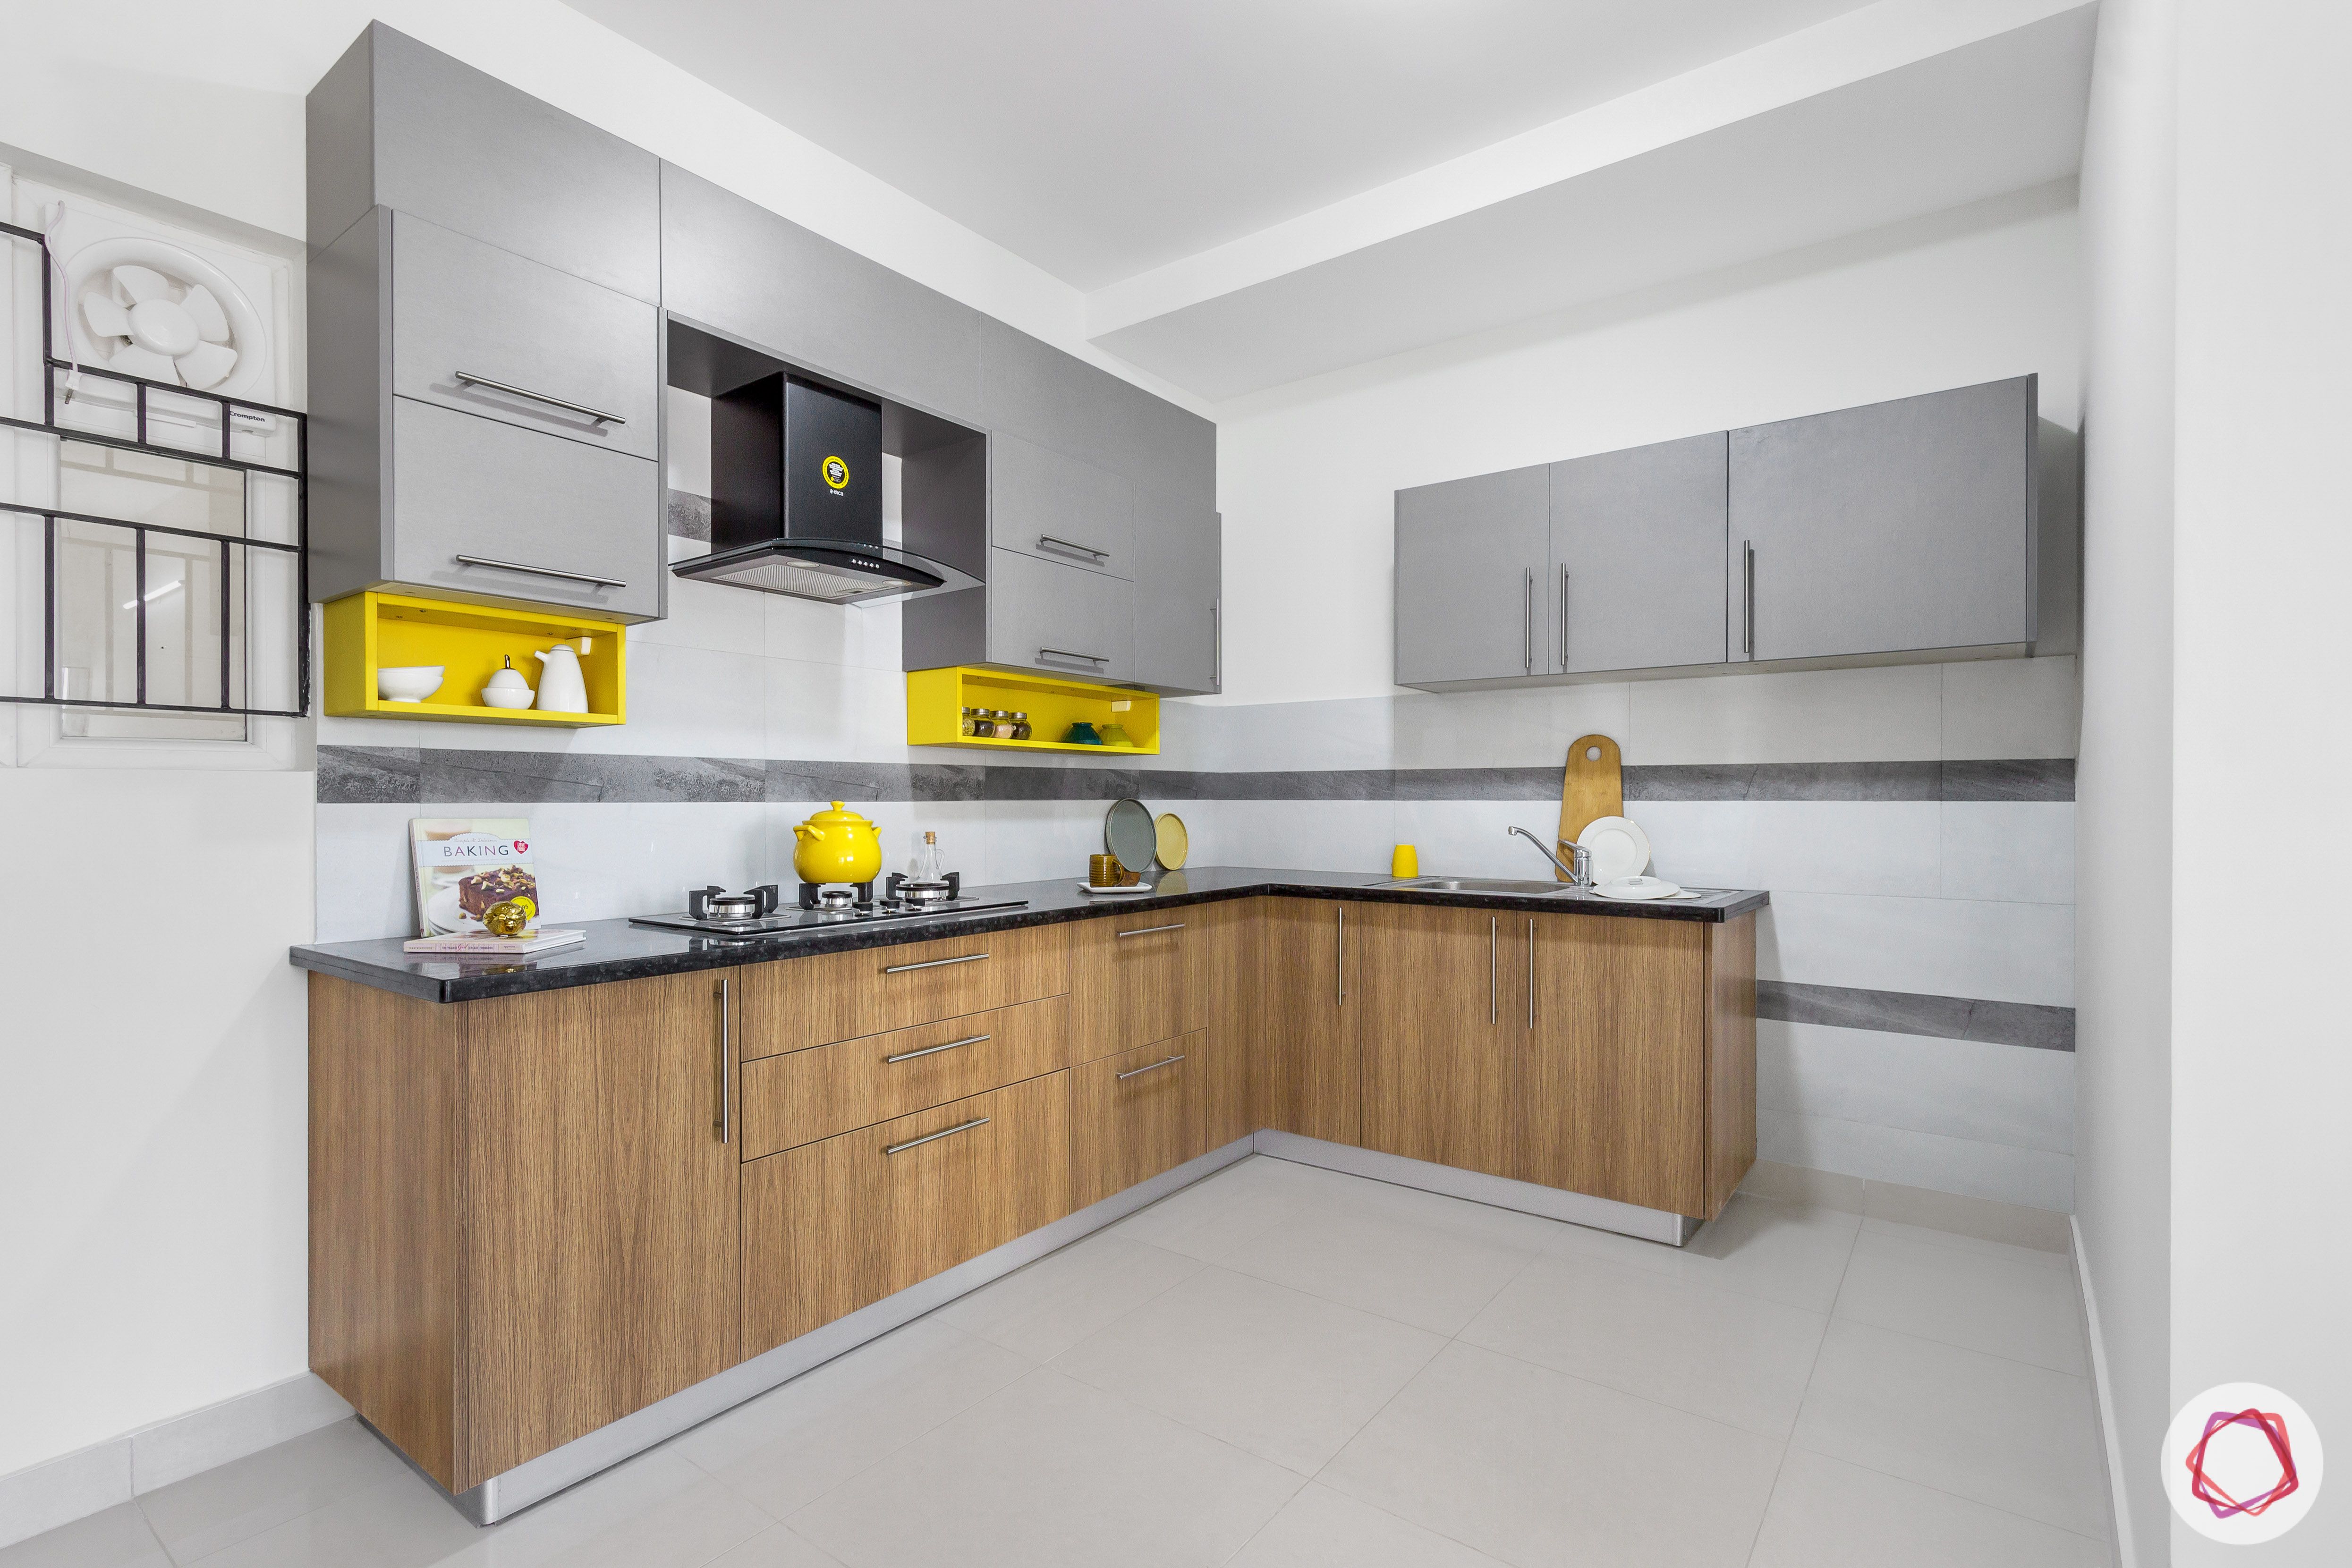 brigade northridge-budget kitchen design-kitchen backsplash design-kitchen neutral colour scheme